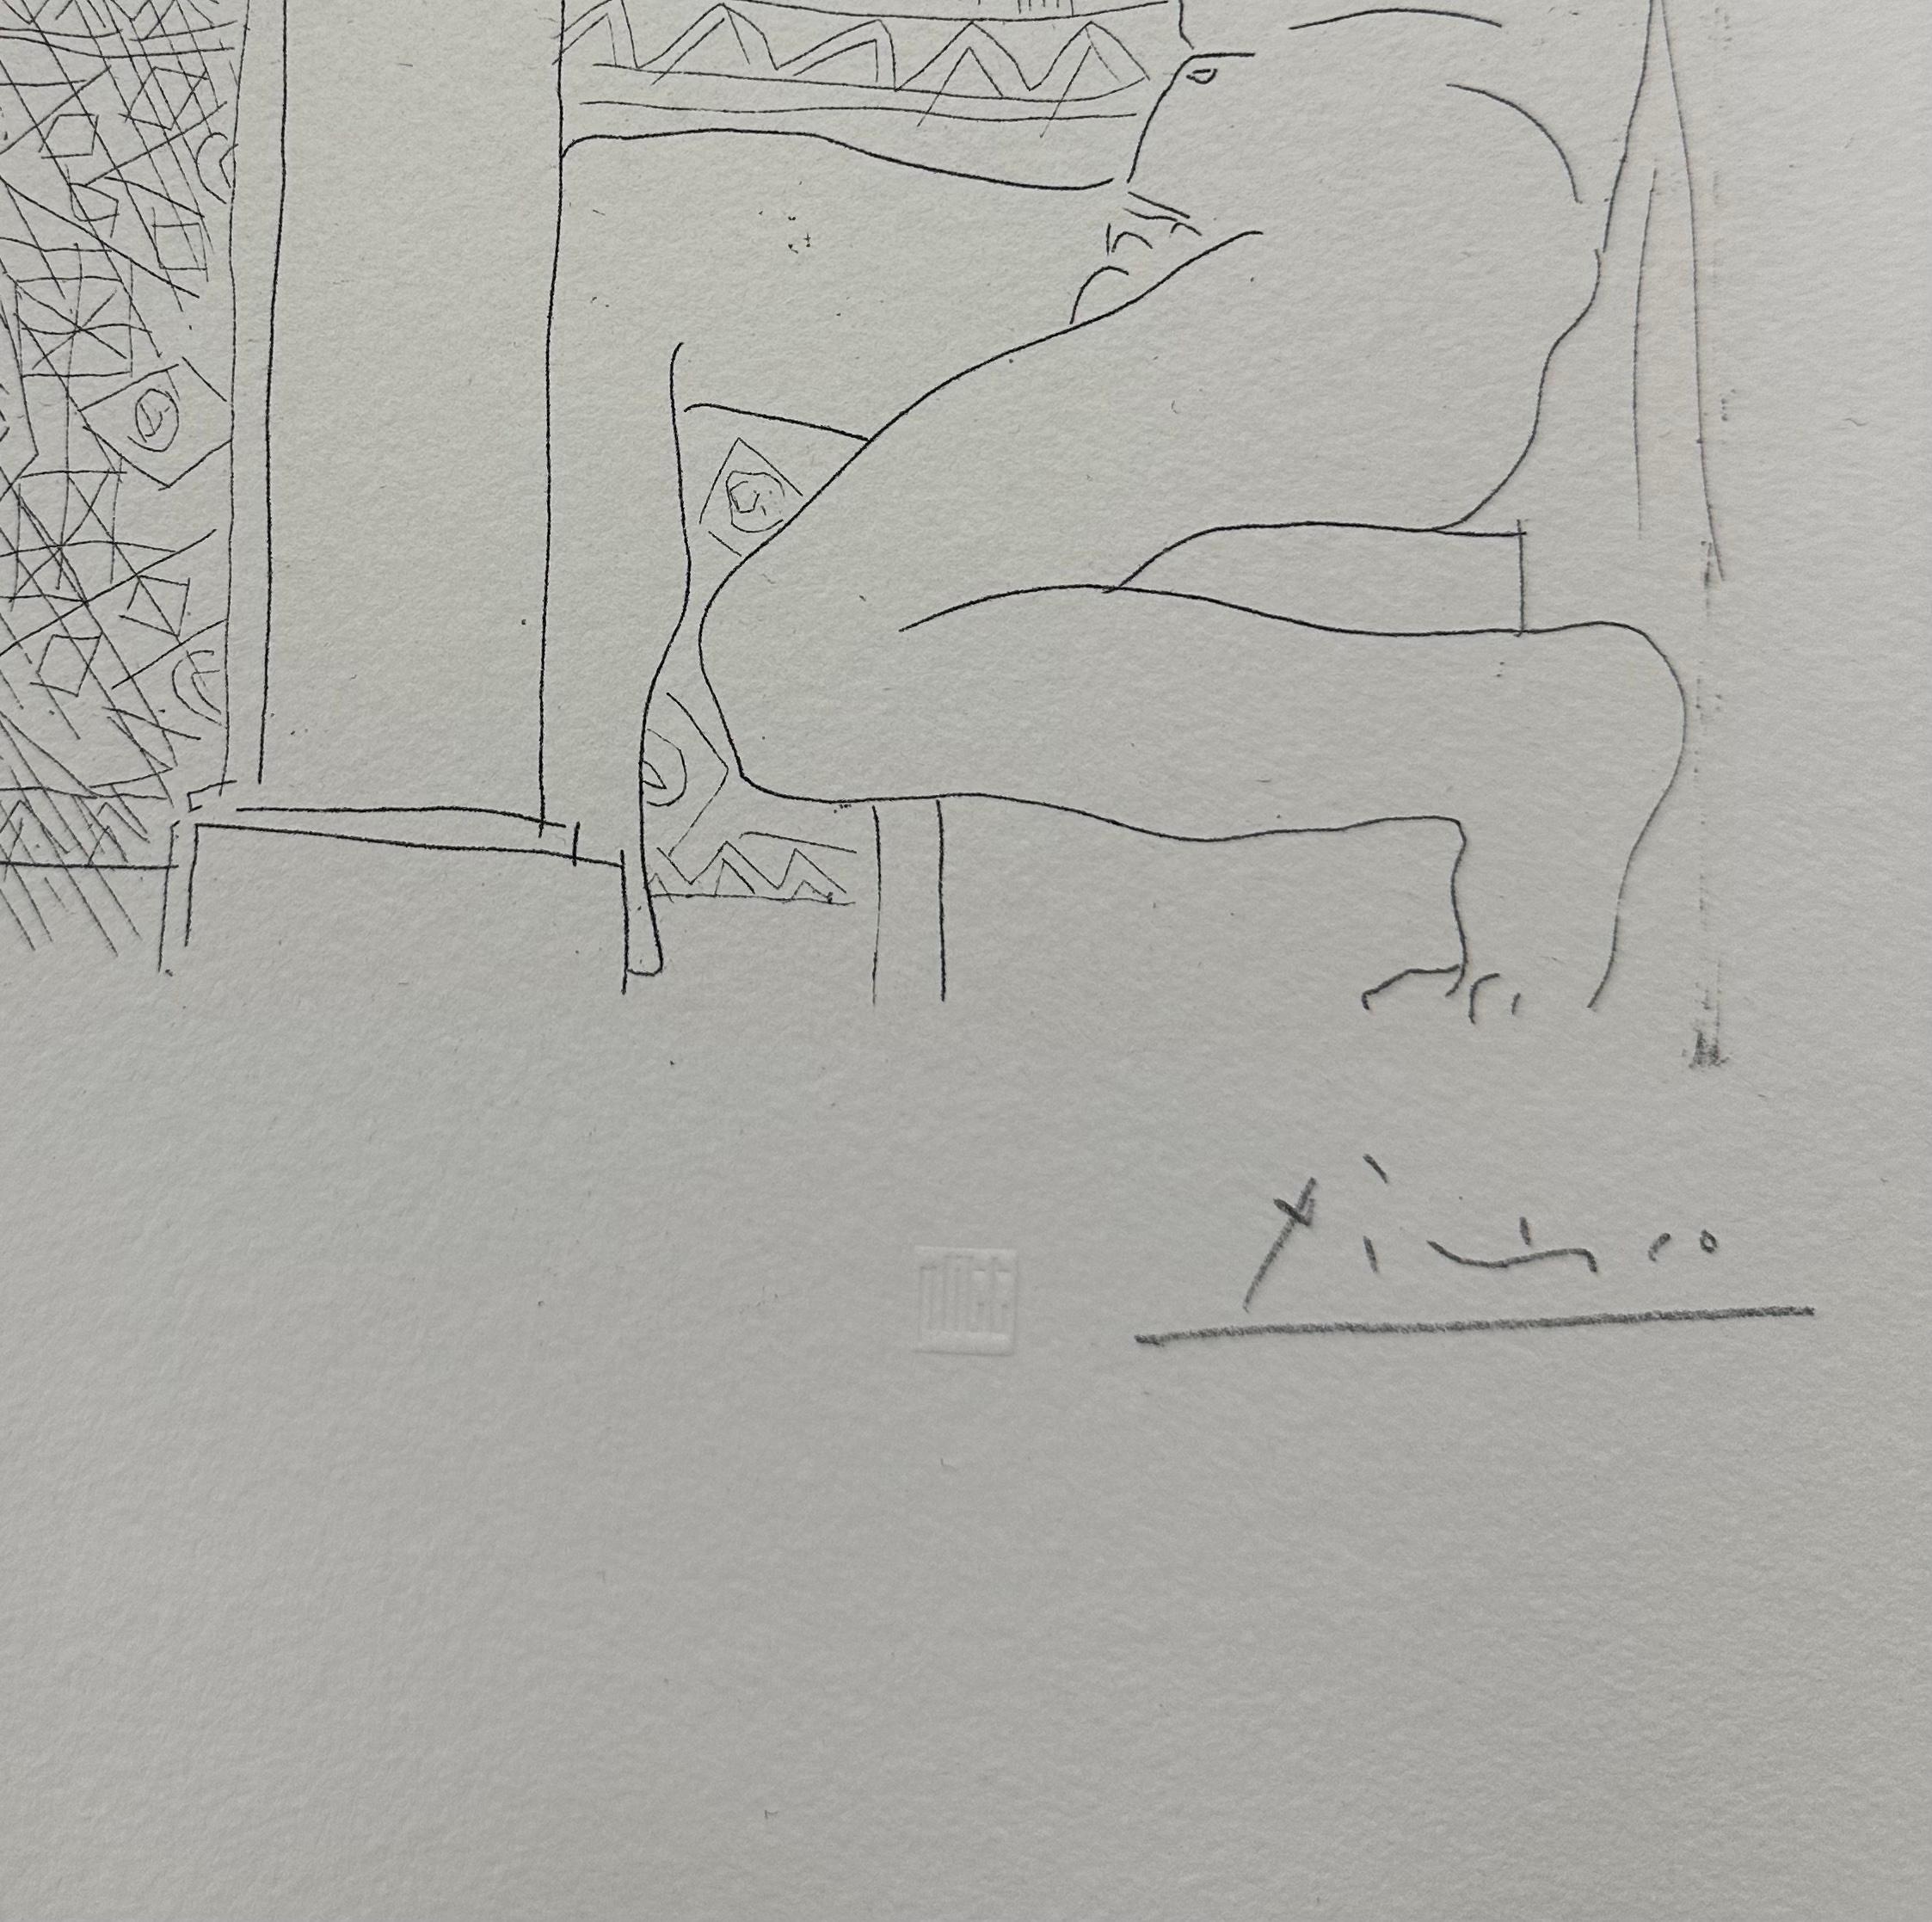 Pablo Picasso, Sculpteur et son Modèle devant une Fenêtre - Print de (after) Pablo Picasso